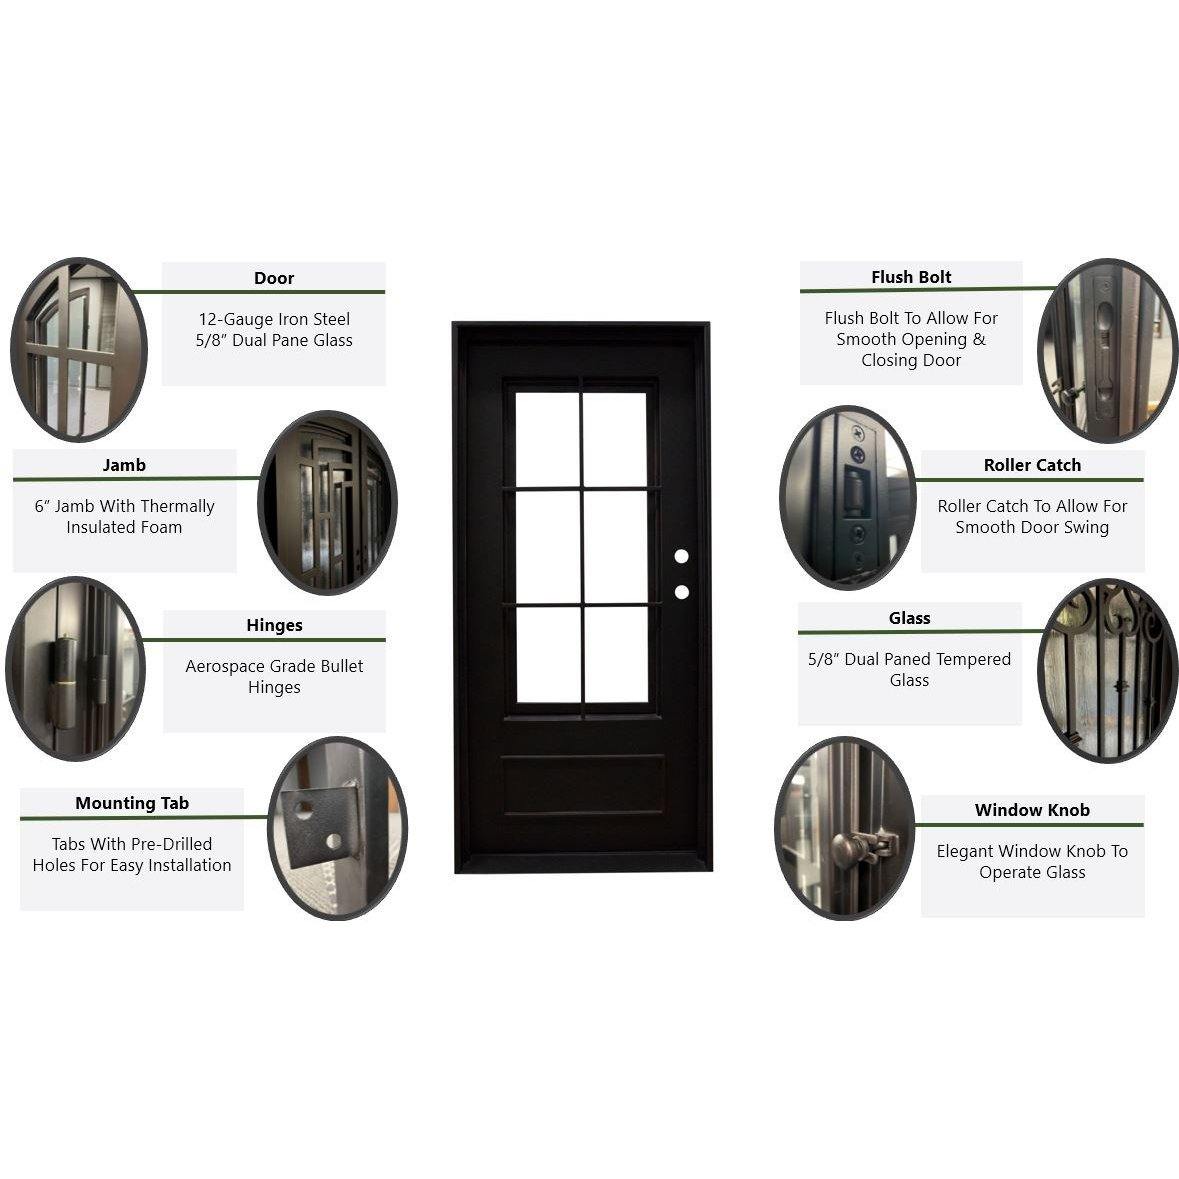 Pre-Order Solden-Wrought Iron Doors-Black Diamond Iron Doors